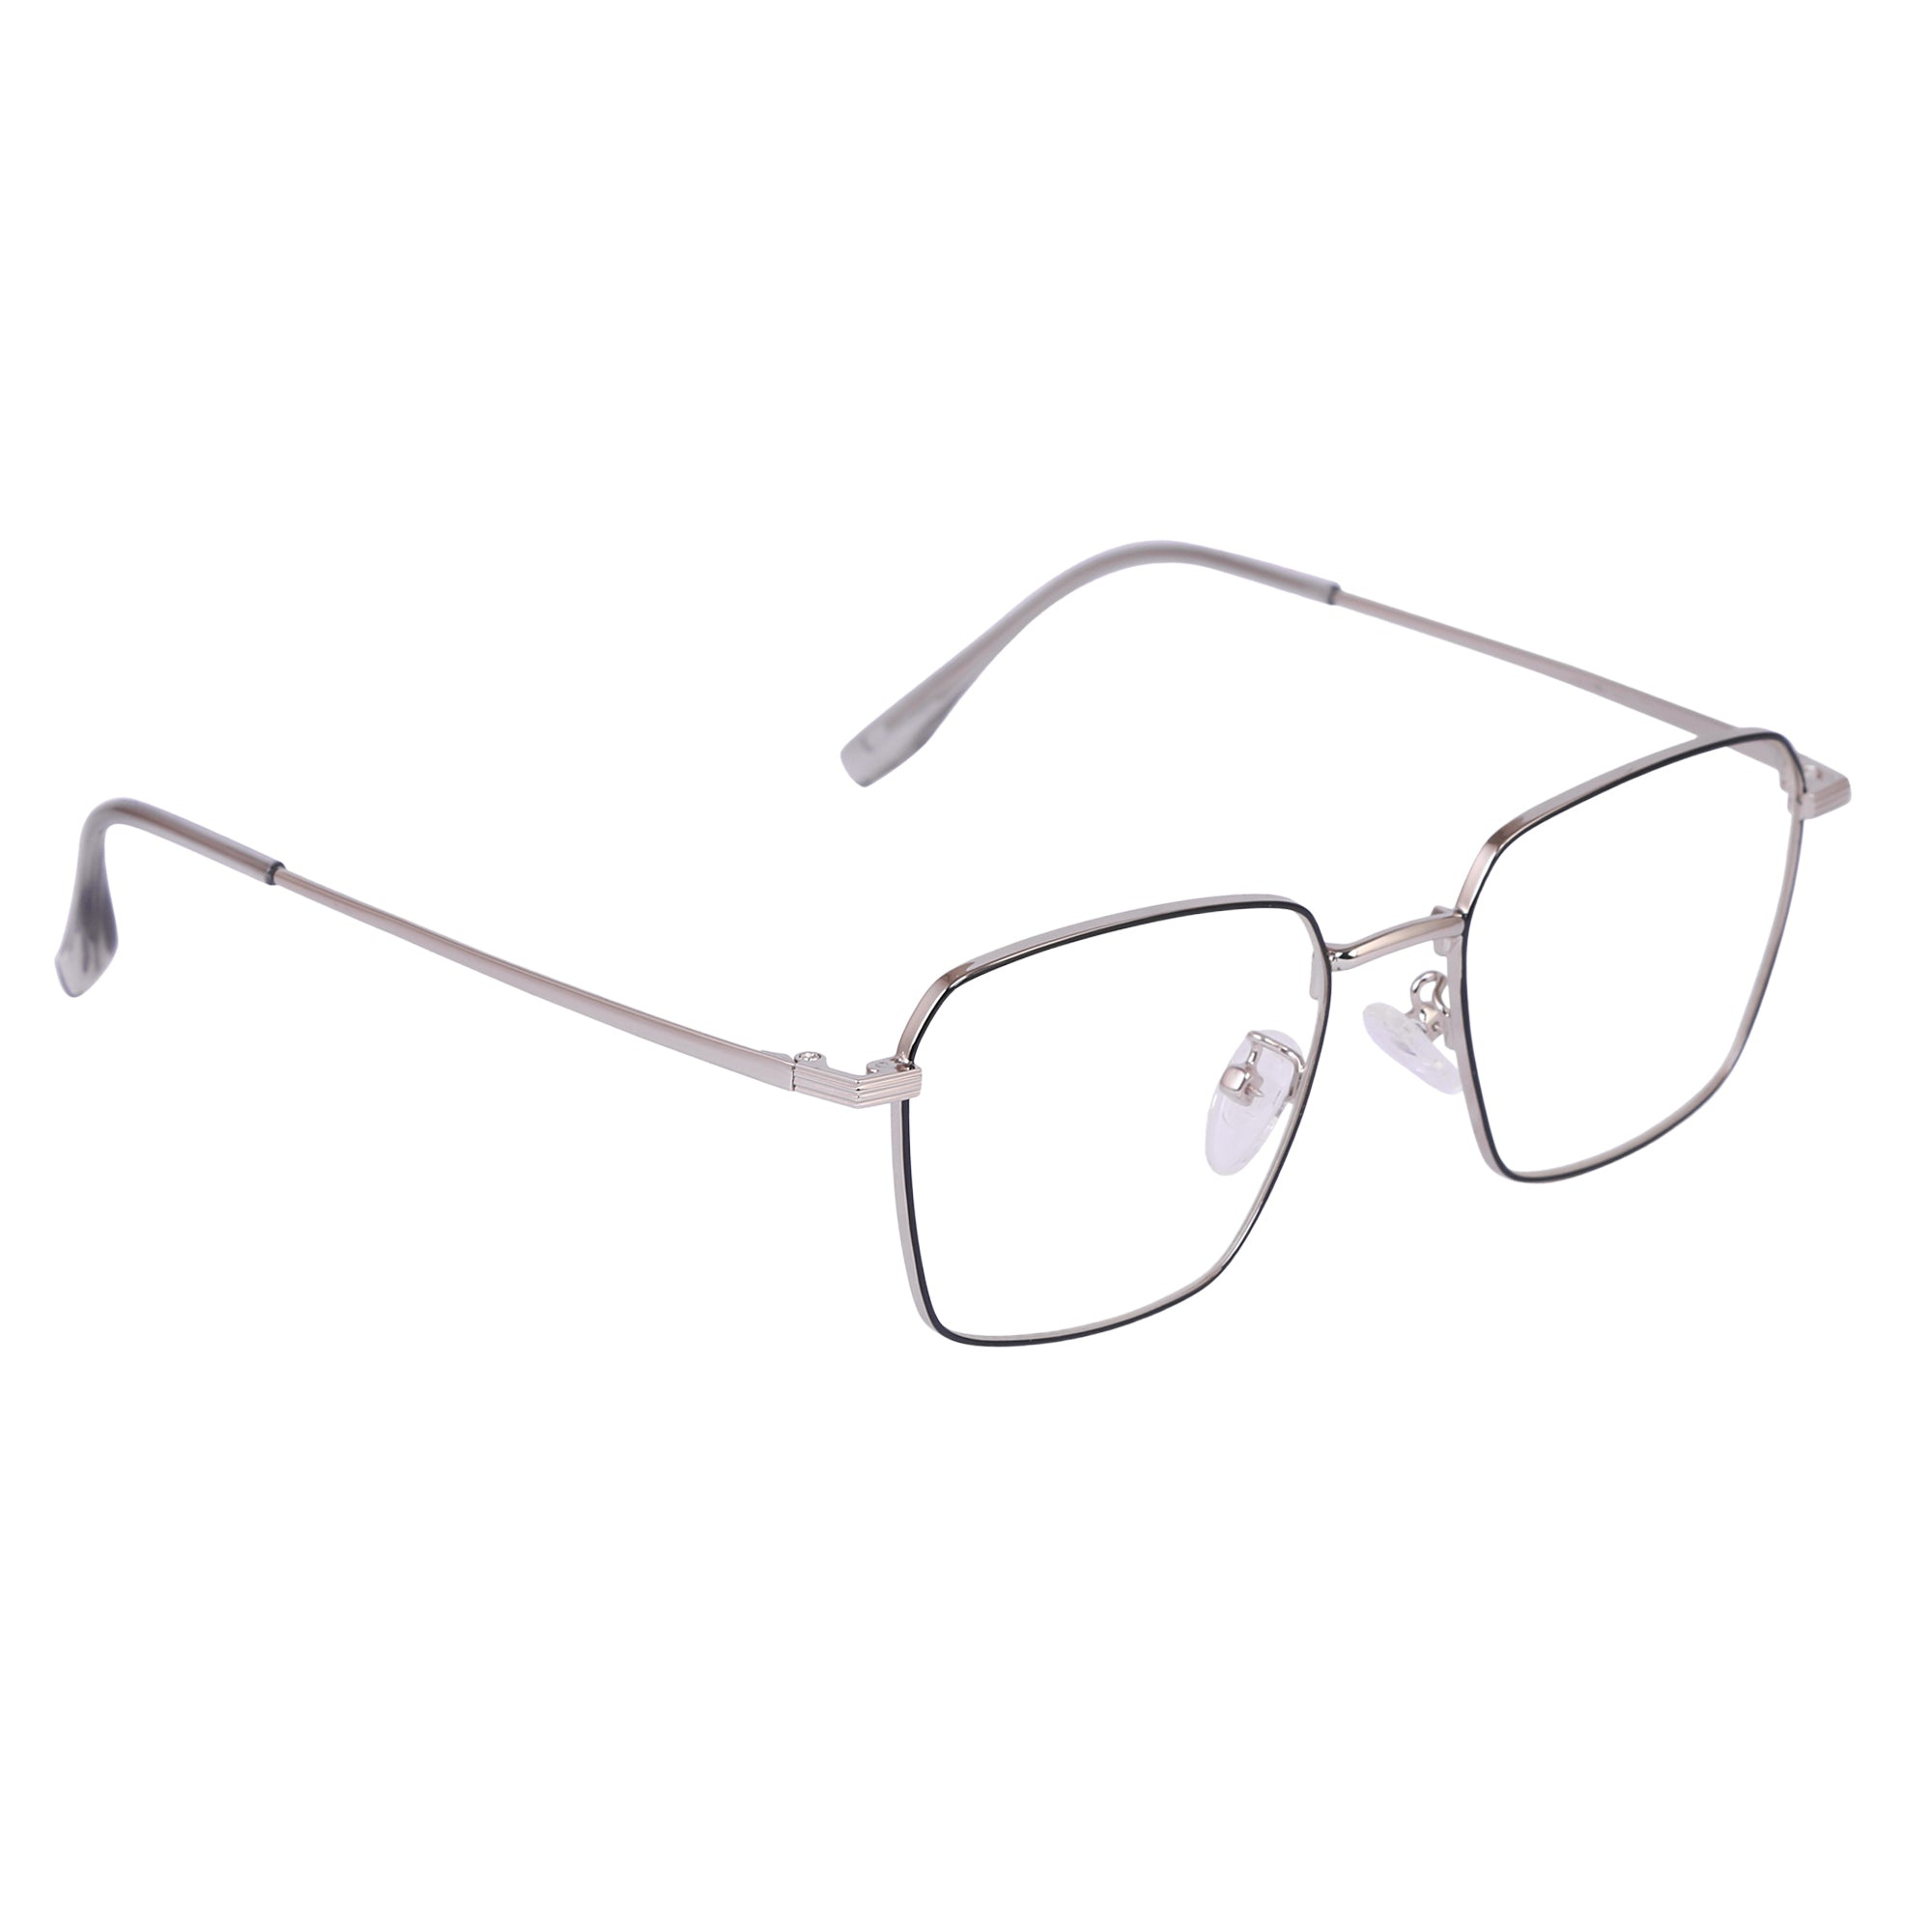 Black & Silver Rimmed Square Metal Eyeglasses - L35006